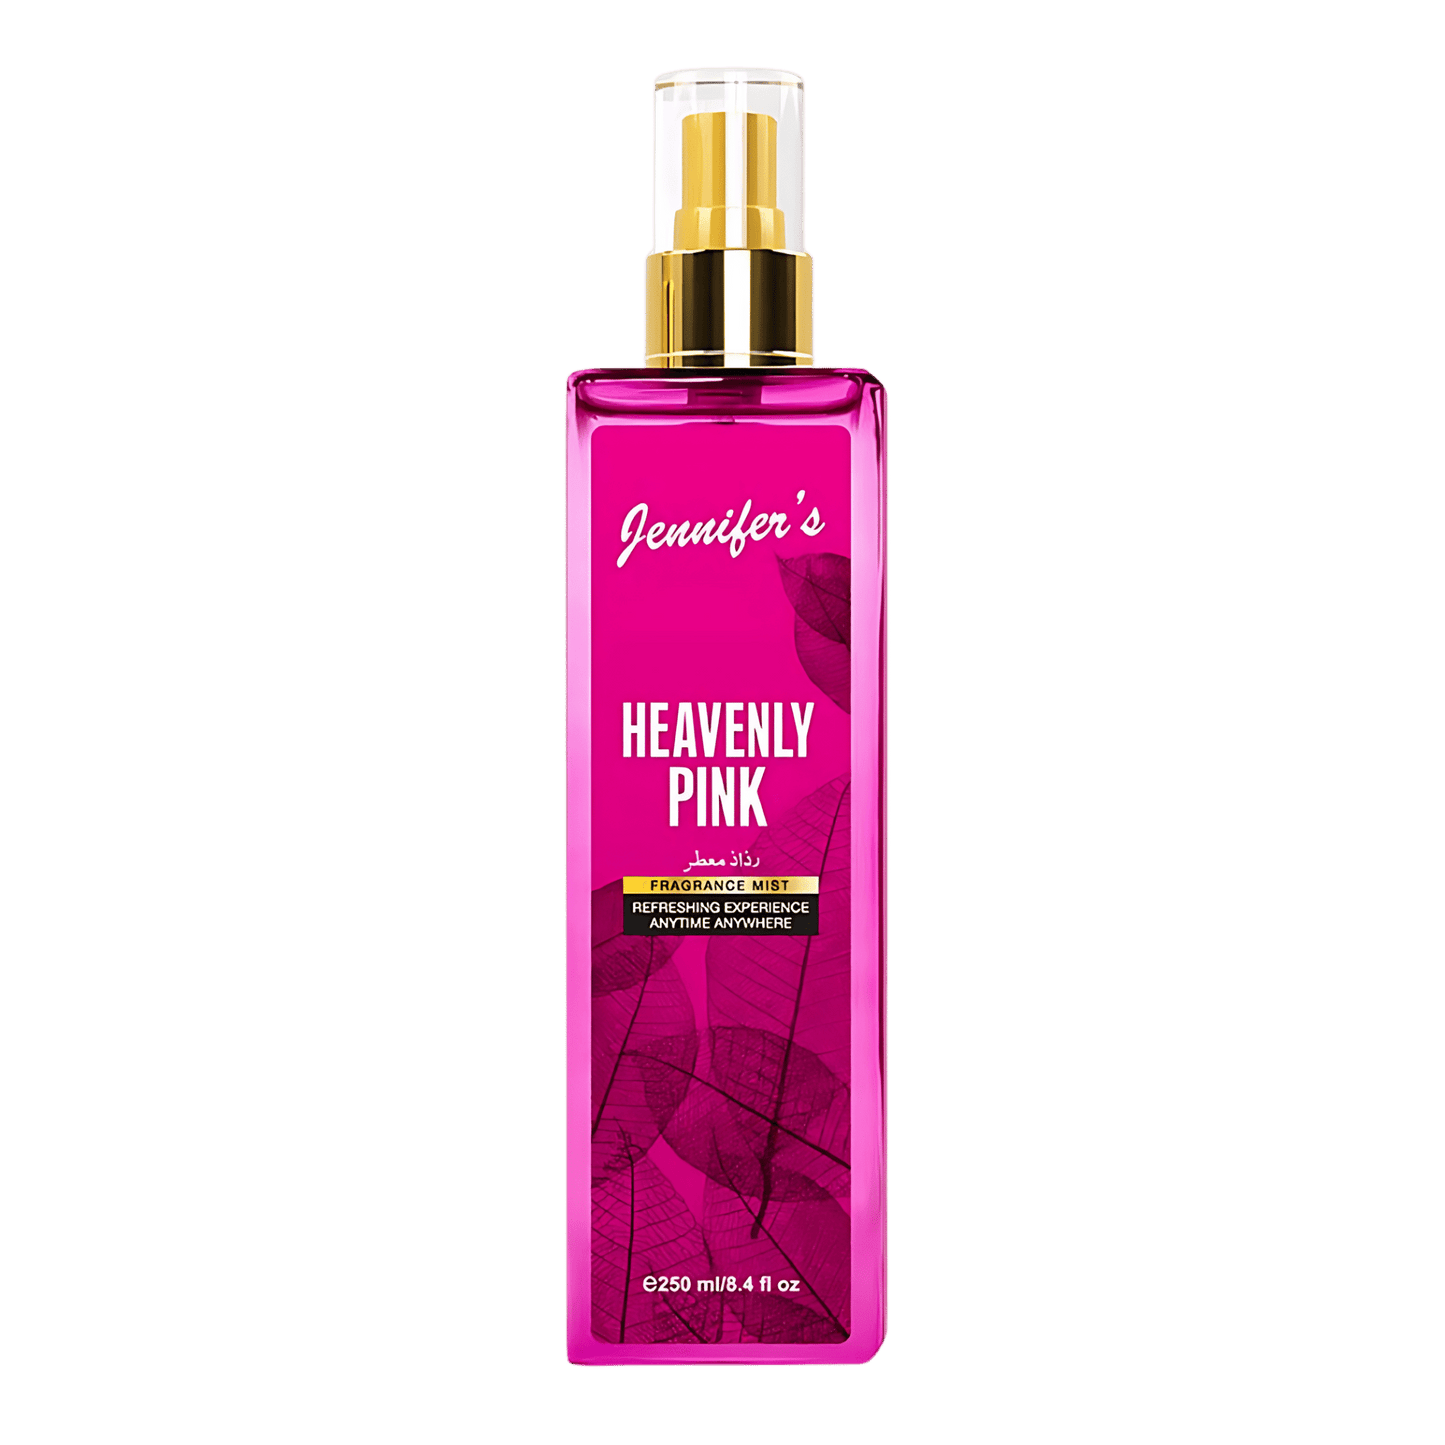 Buy Jennifer's Fragrance Mist Heavenly Pink Online In Pakistan!